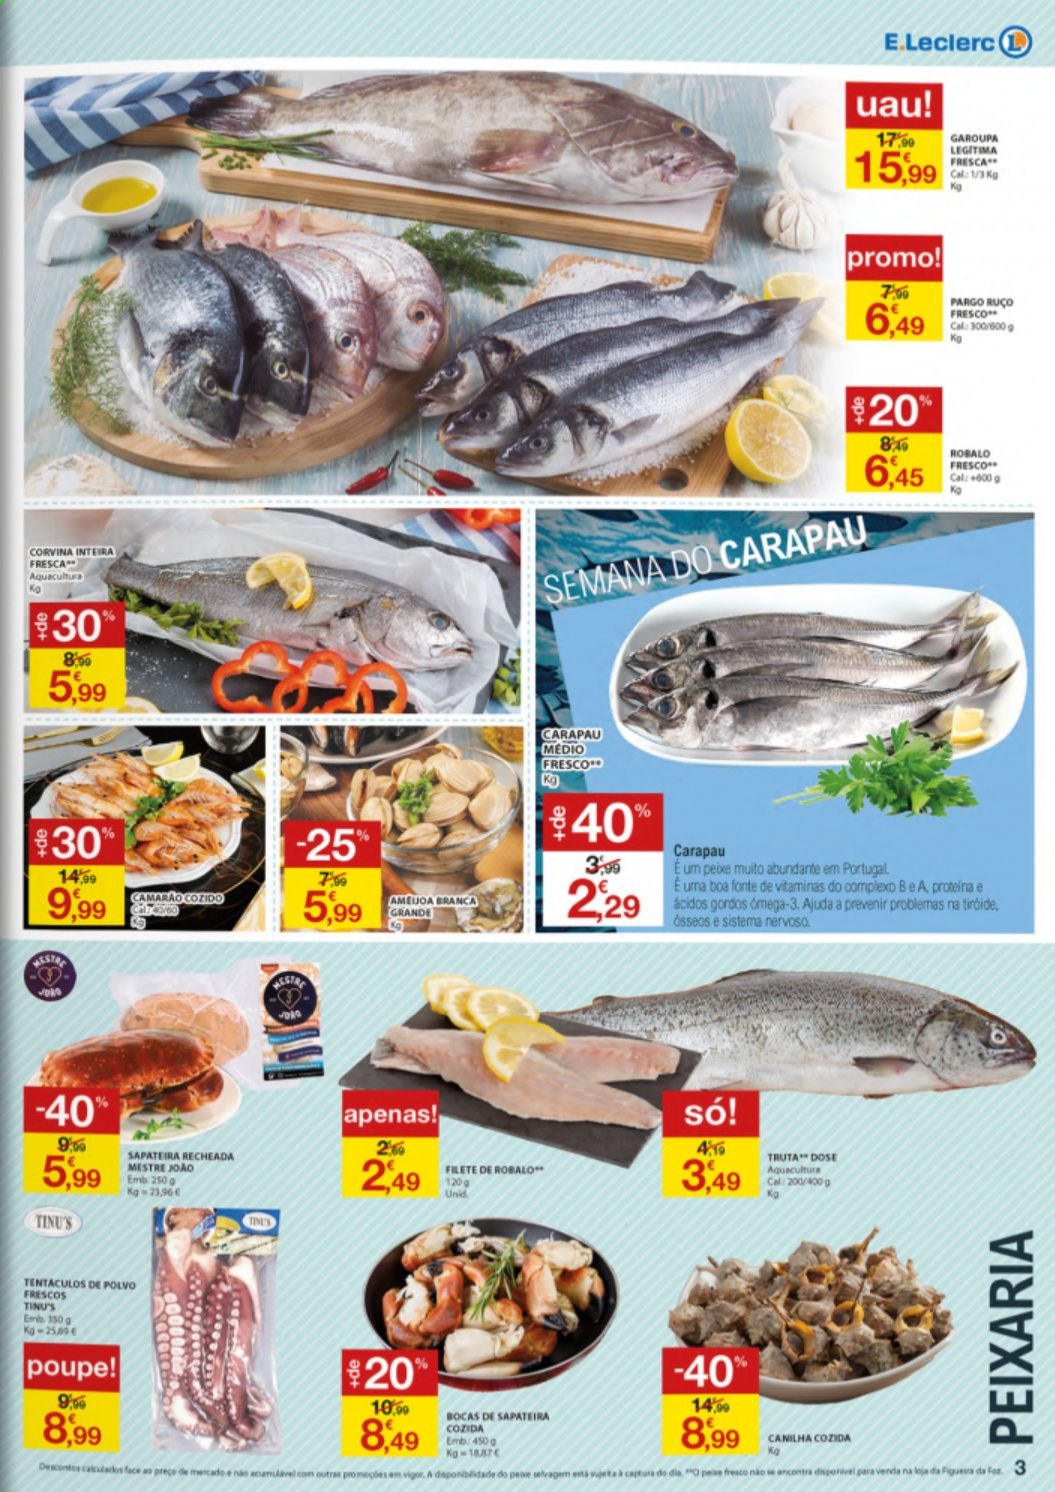 thumbnail - Folheto E.Leclerc - 22.4.2021 - 28.4.2021 - Produtos em promoção - garoupa, camarão, polvo, corvina, peixe, truta. Página 3.